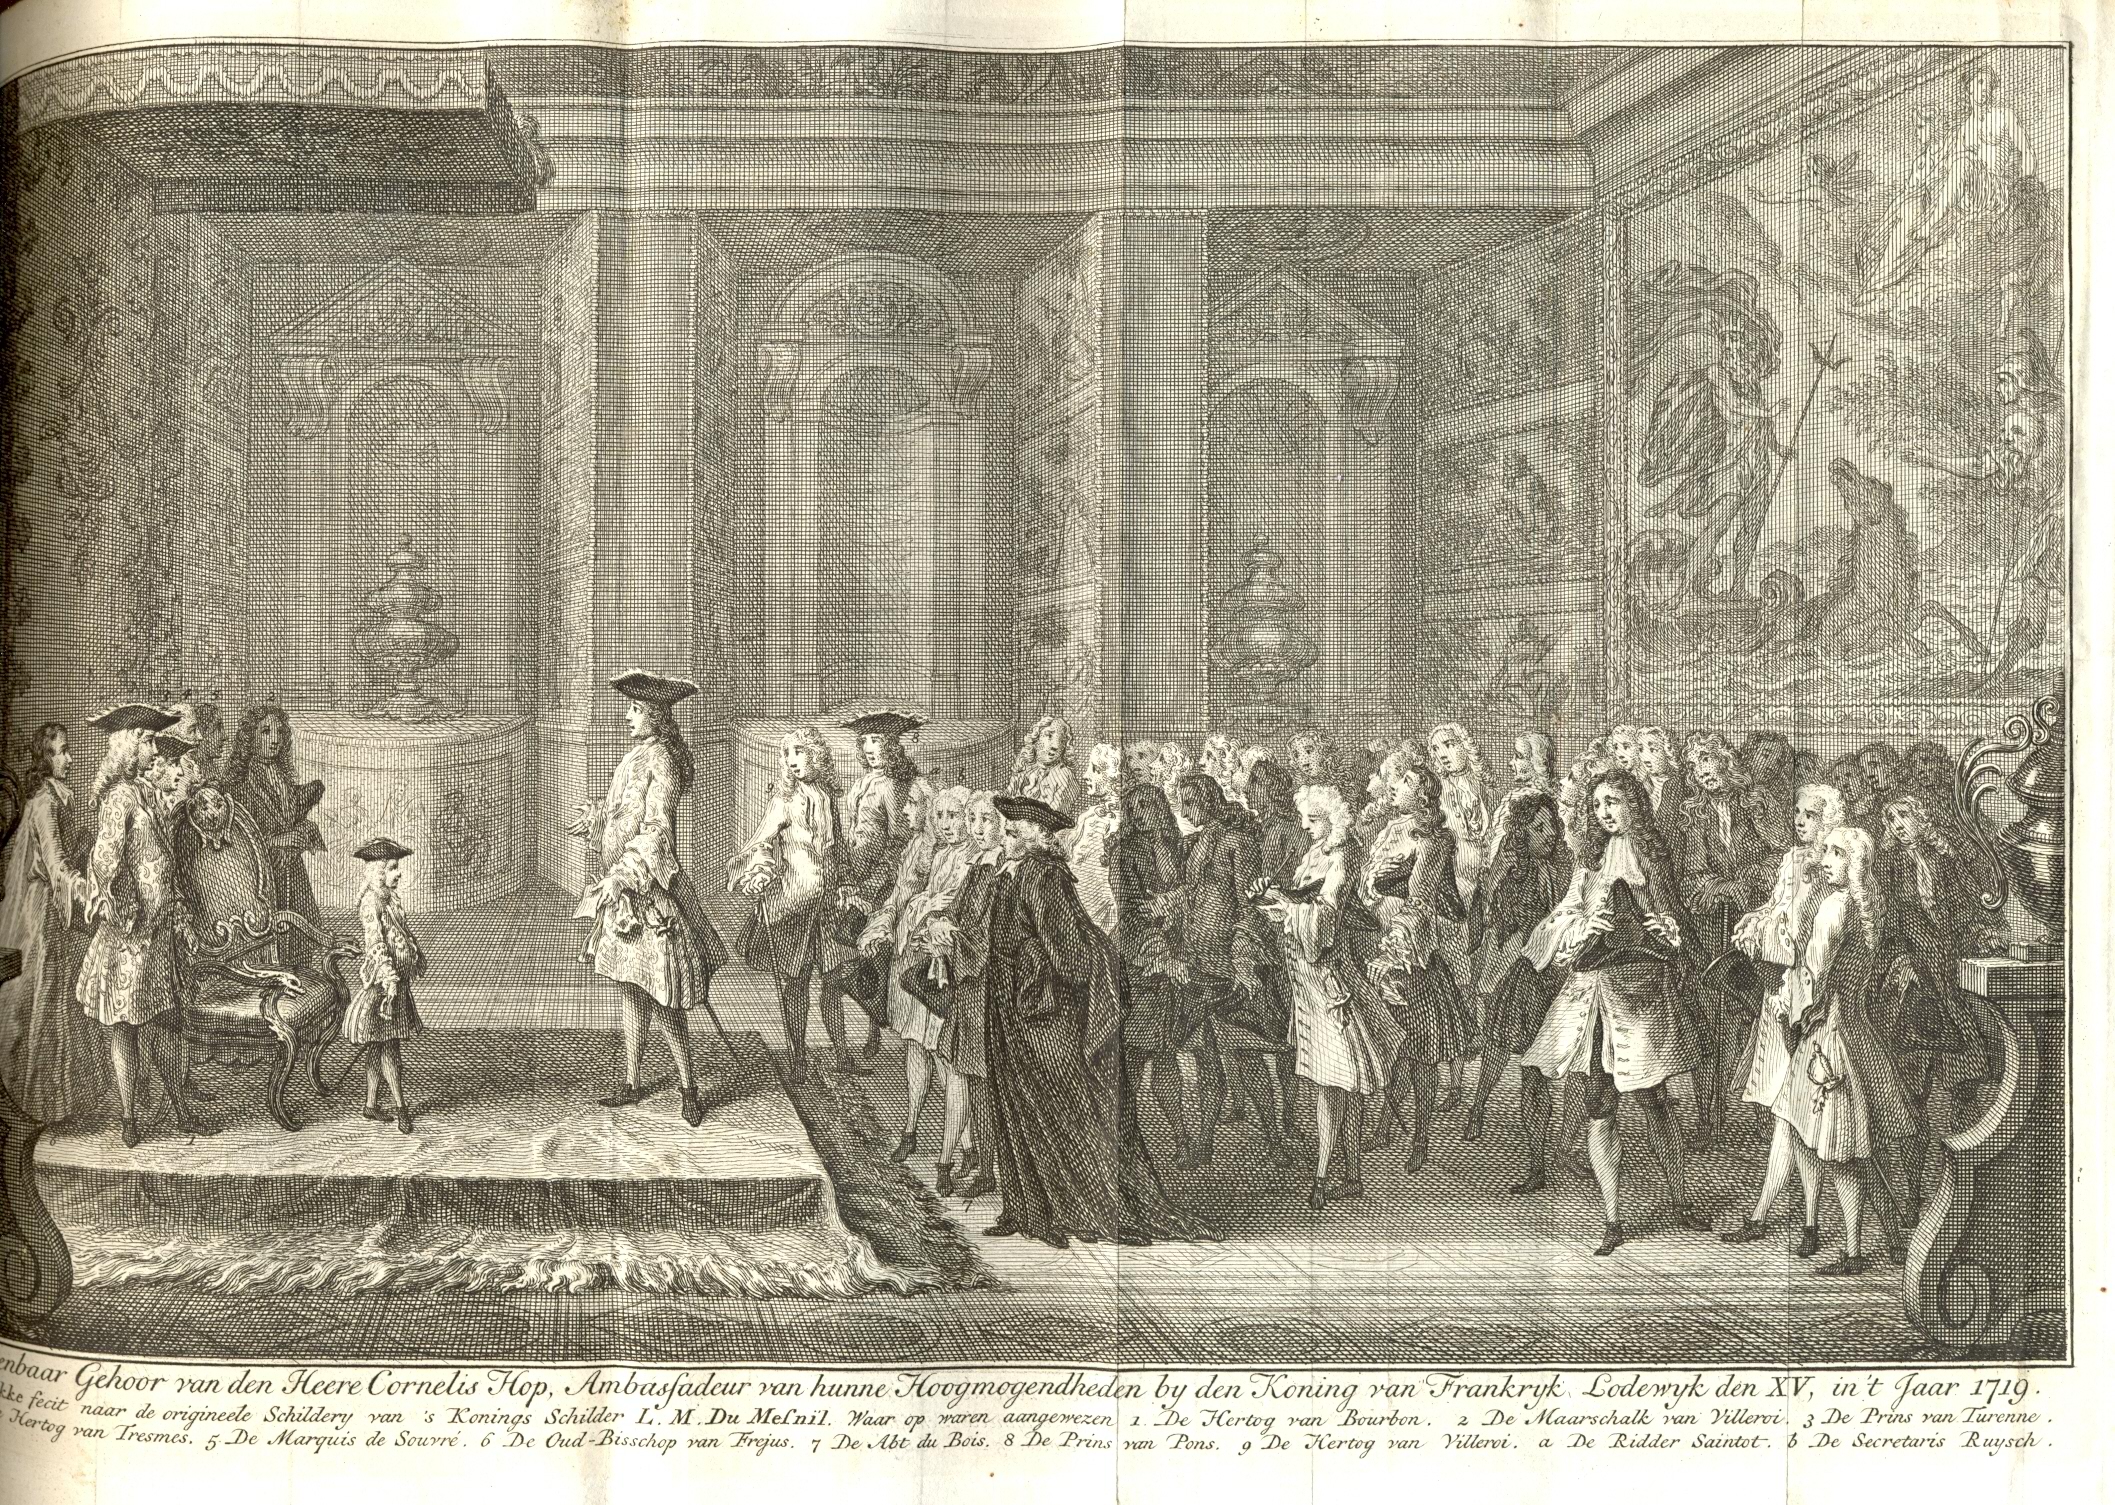 Ambassadeur van de Republiek Cornelis Hop bij koning Lodewijk XV, 1719.